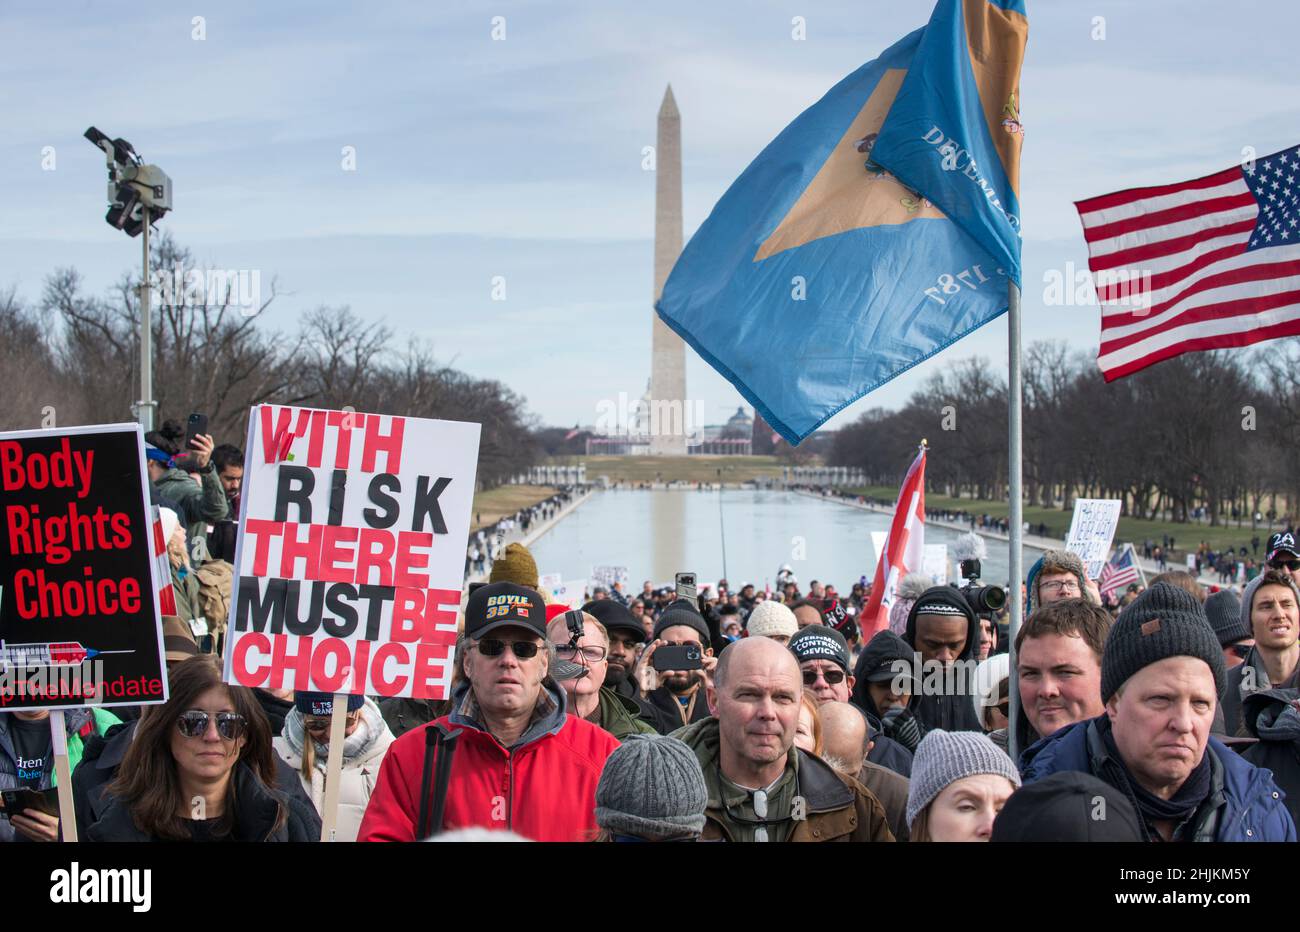 Battez les mandats en mars au Lincoln Memorial Reflecting pool.manifestants protestant contre le masque et les mandats de vaccination Covid-19.Washington, DC, janvier 23,2022 Banque D'Images